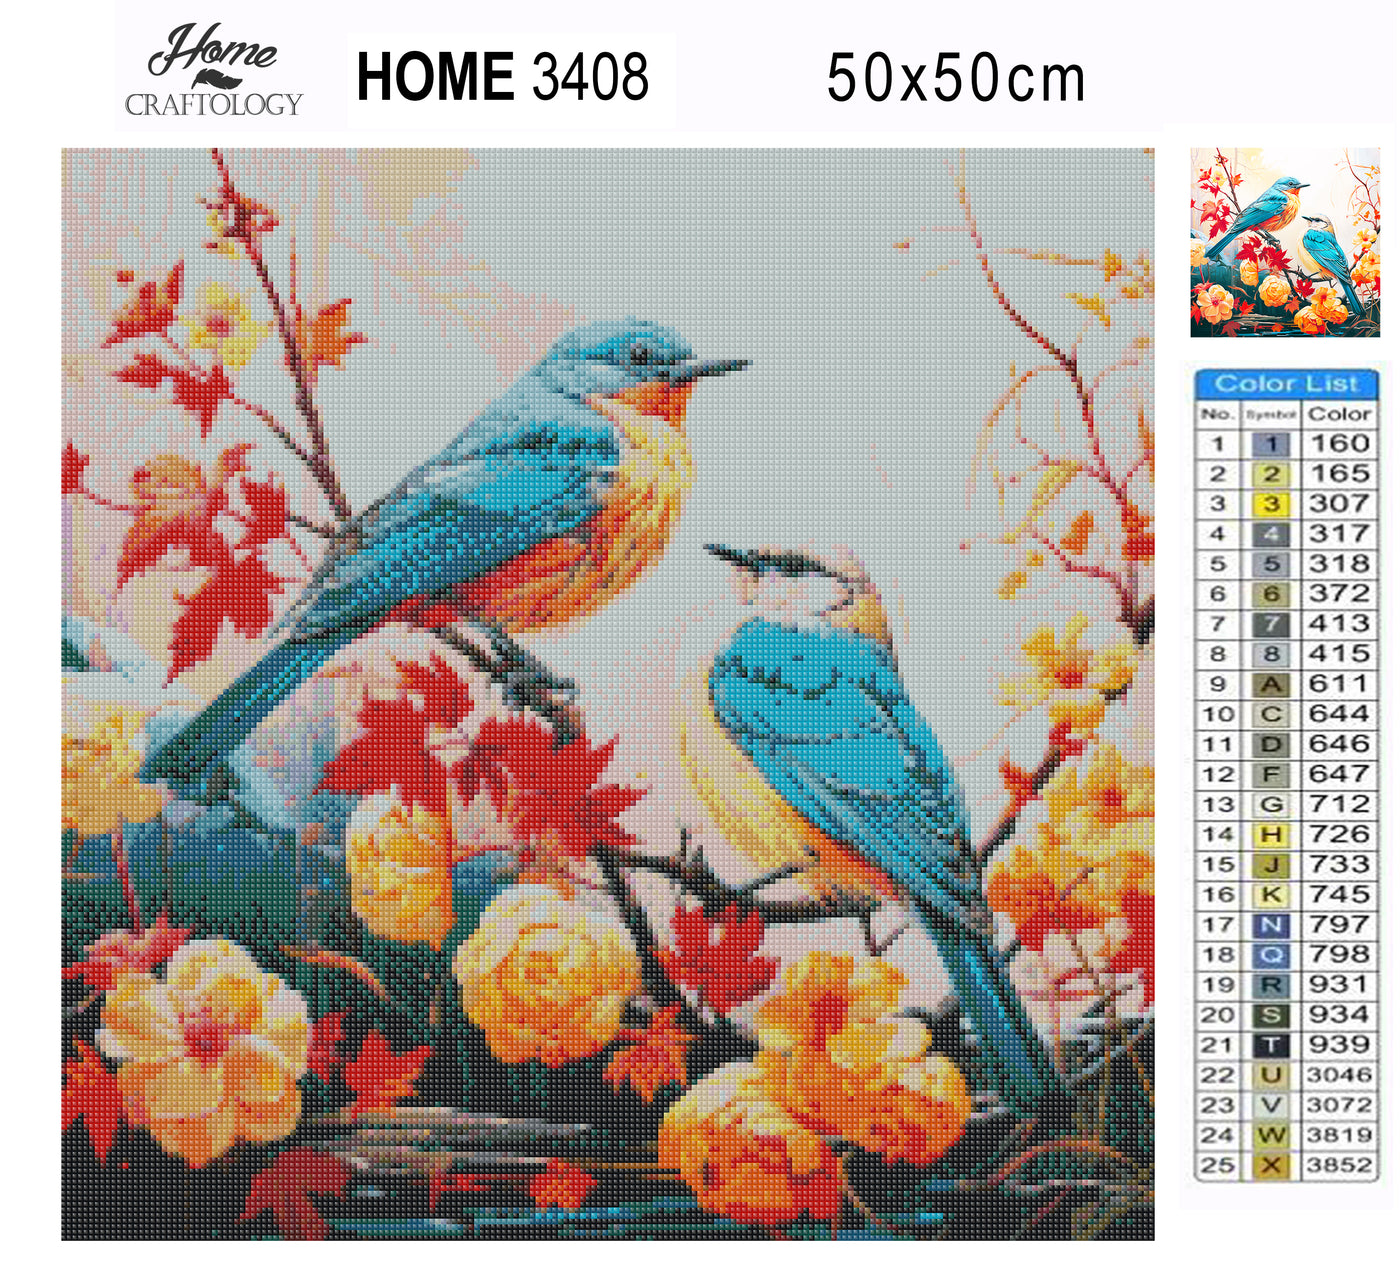 Birds in Autumn - Premium Diamond Painting Kit